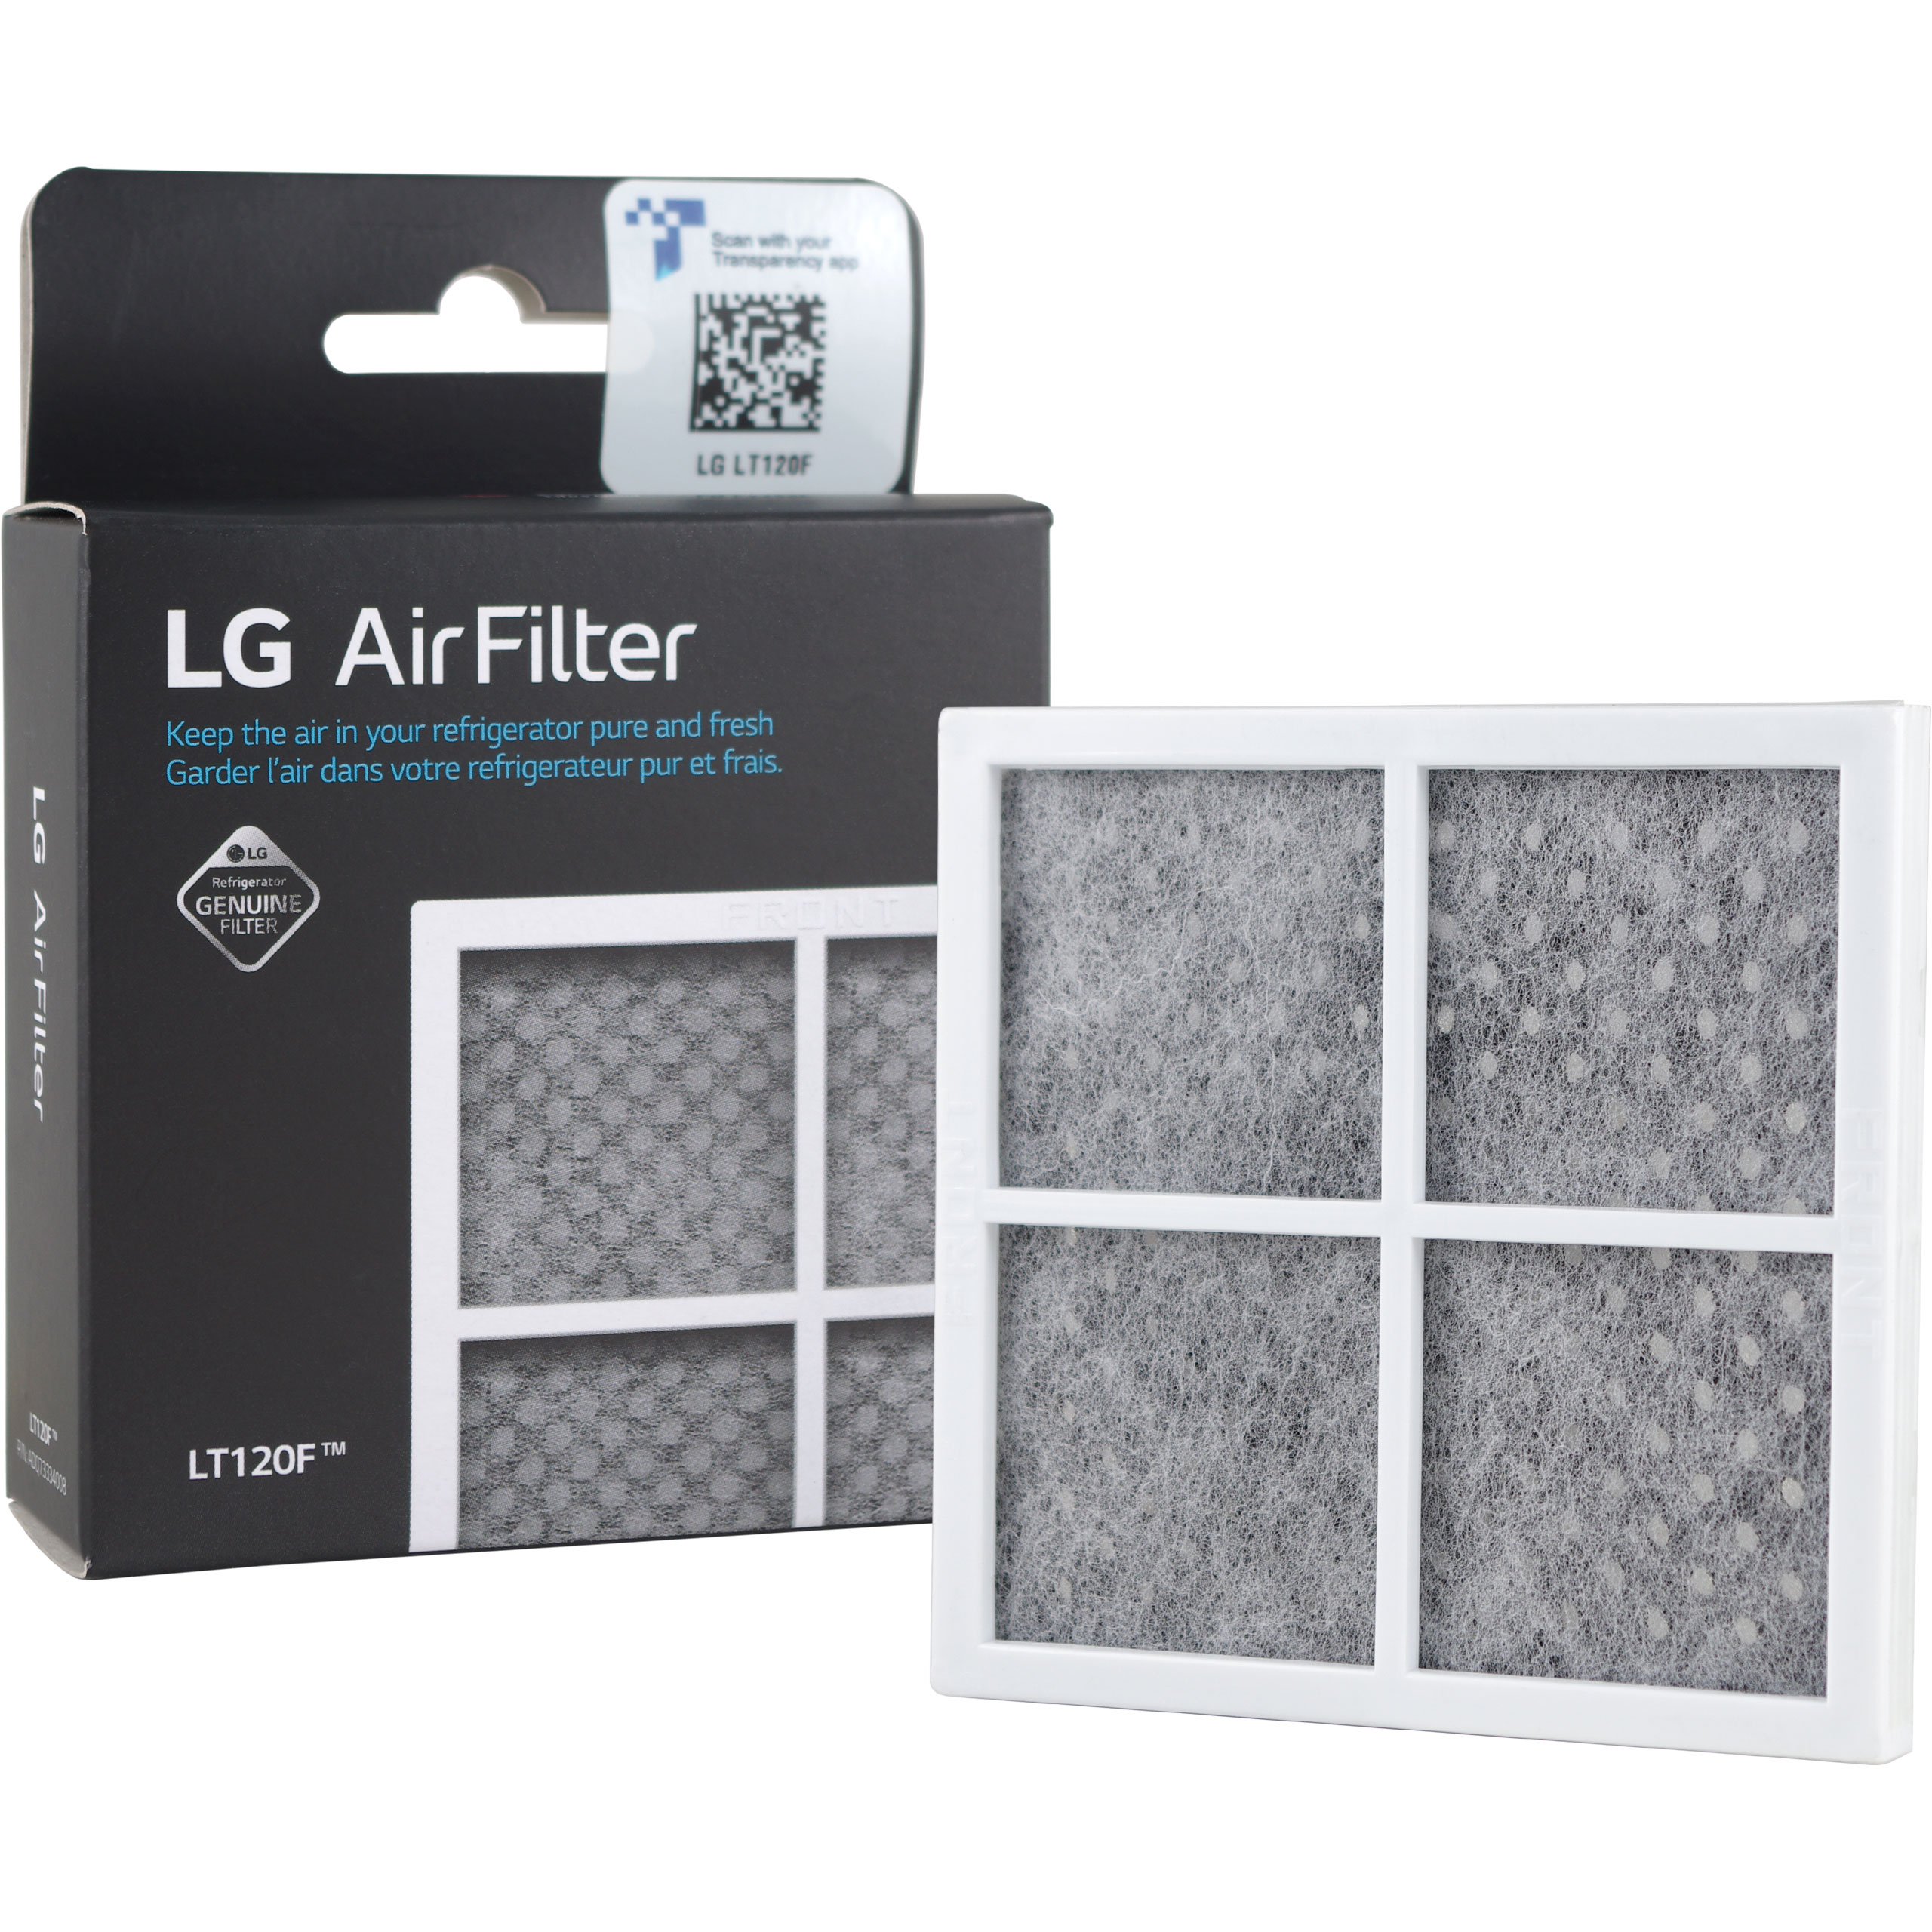 LG COMPATIBLE EXTERNAL FRIDGE WATER FILTER + LT120F 2X 2X LG AIR FILTER